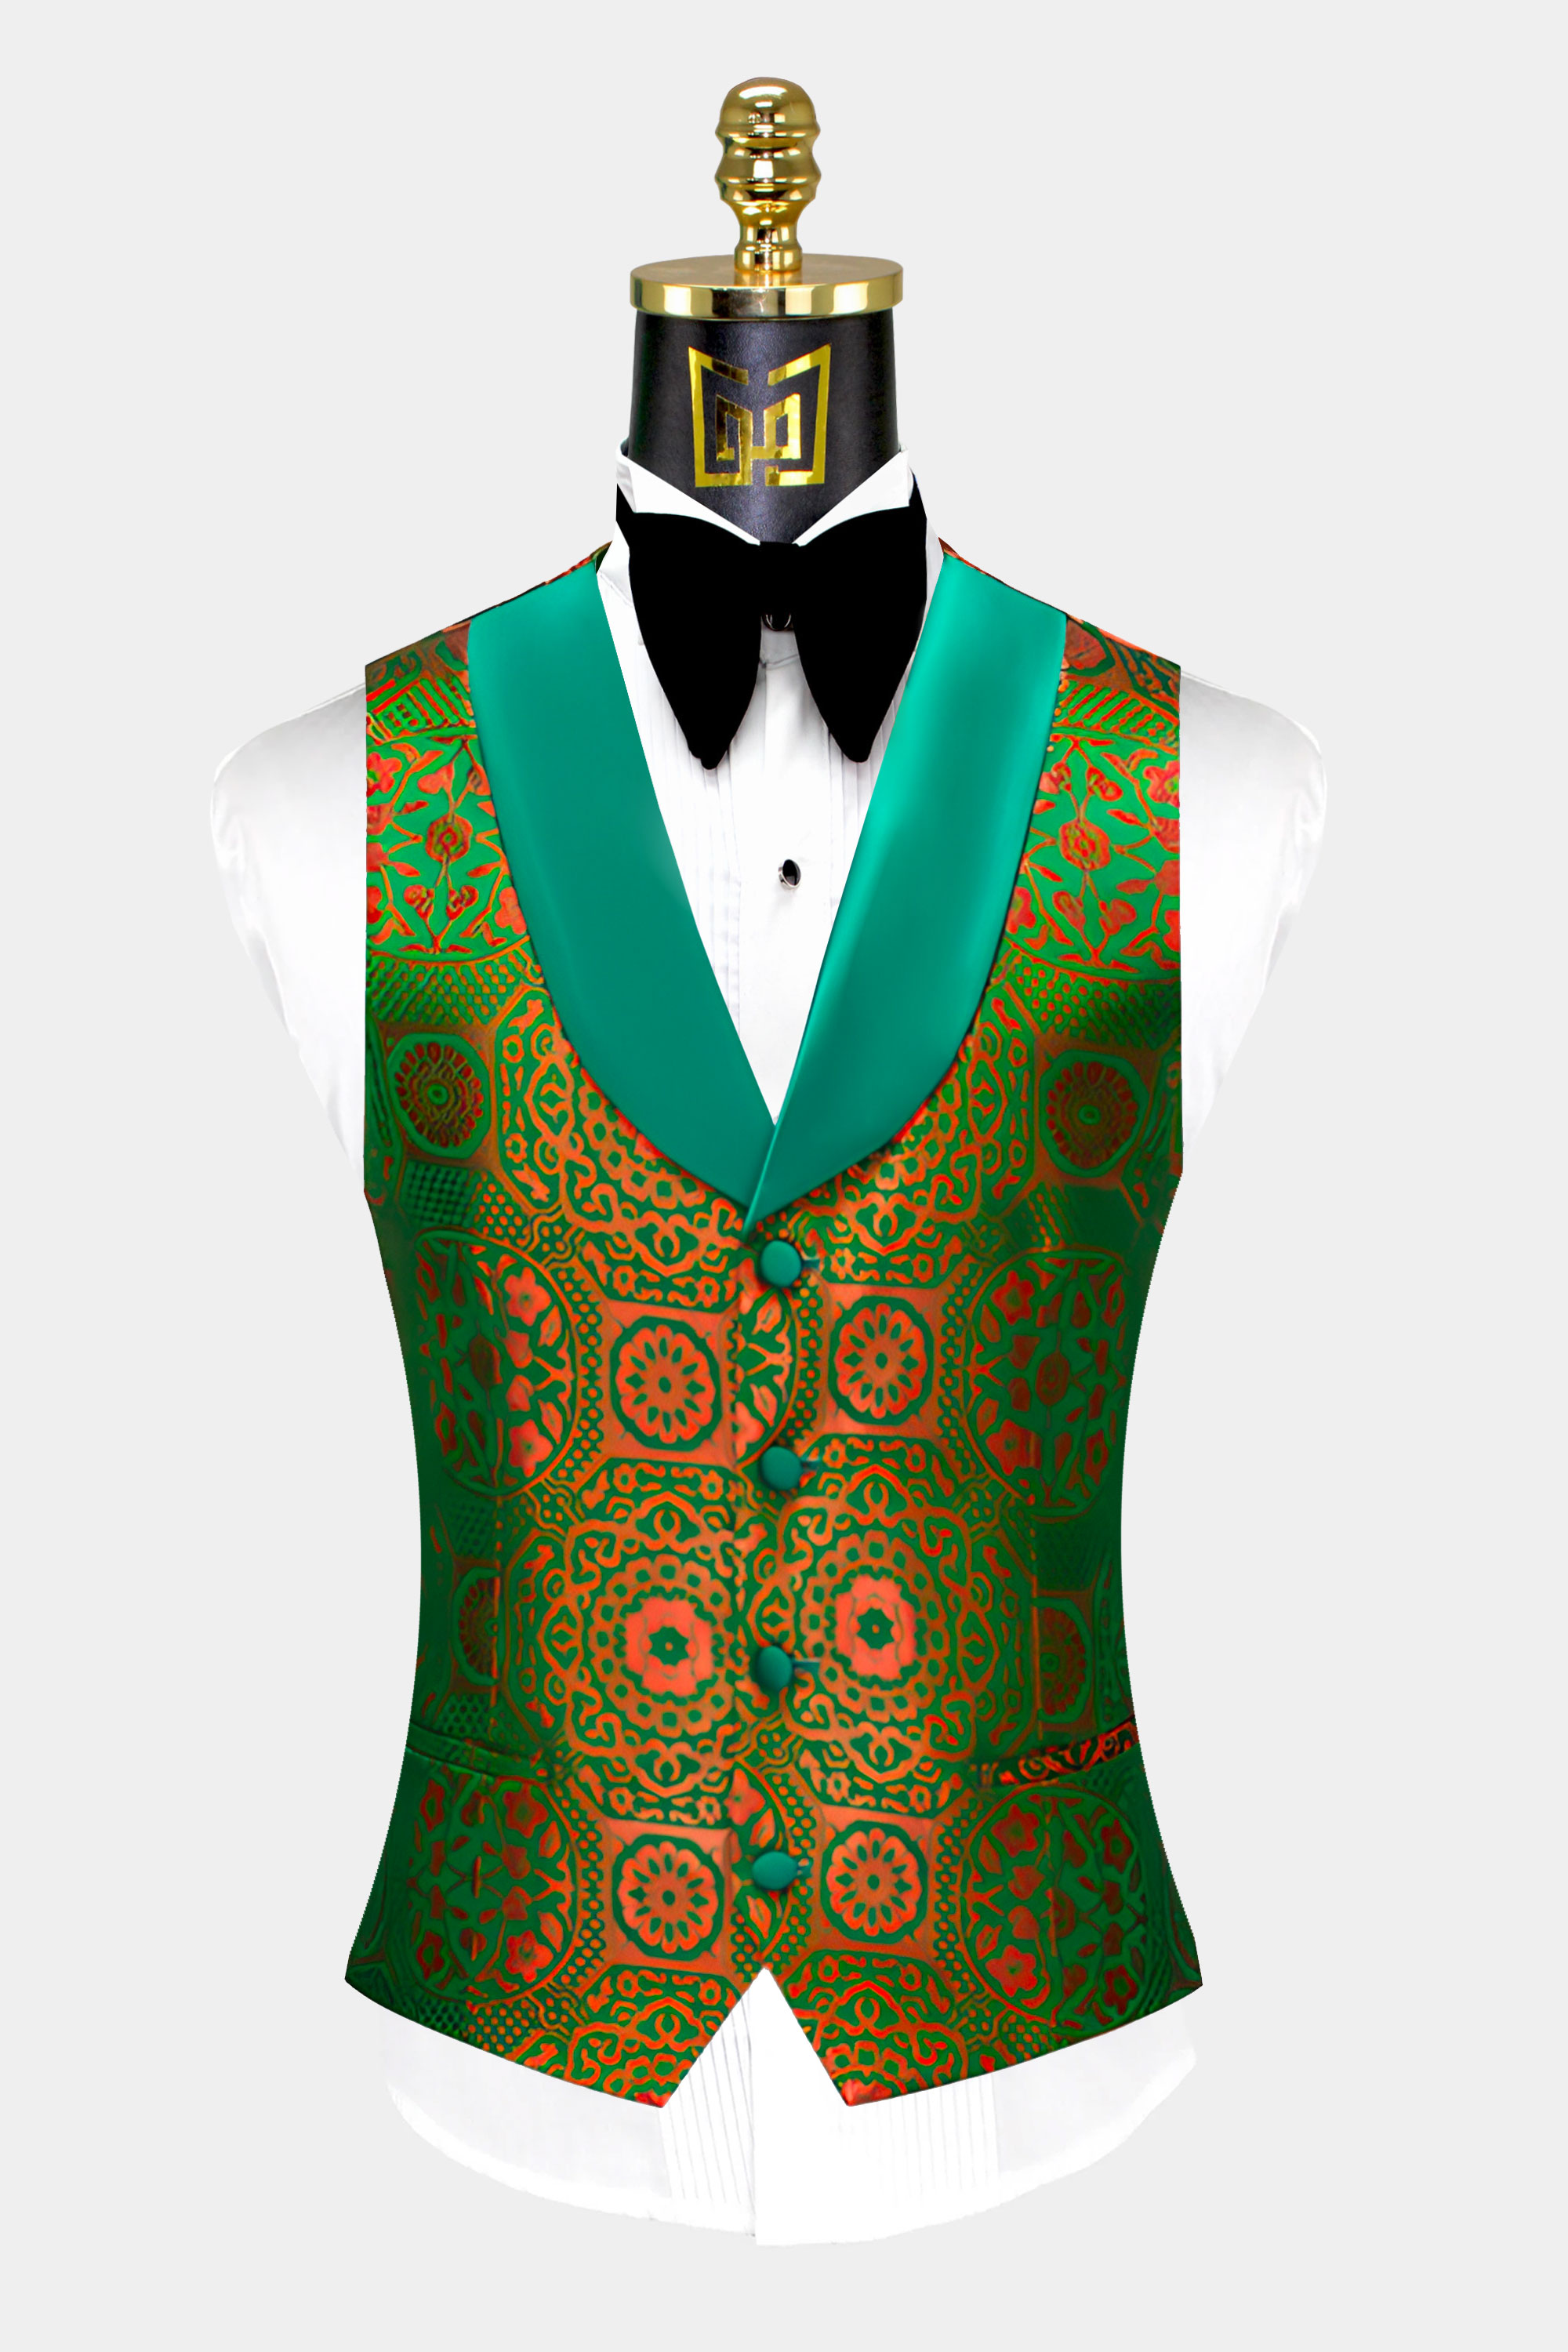 Orange-and-Green-Tuxedo-Vest-from-Gentlemansguru.com